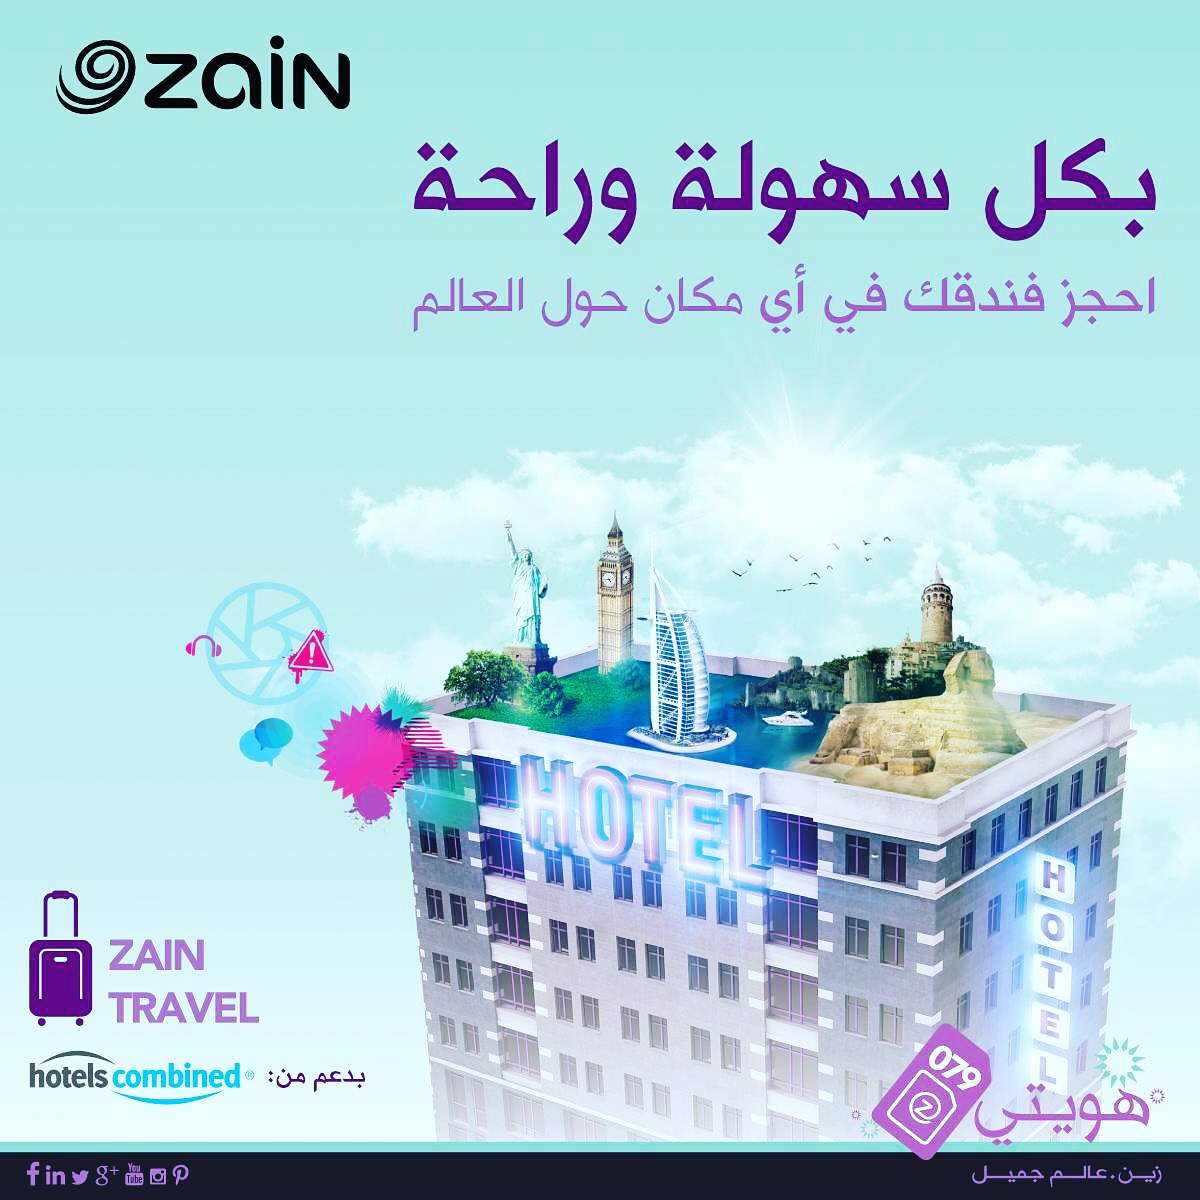 زين تتيح حجز الفنادق حول العالم من موقعها Zain Booking